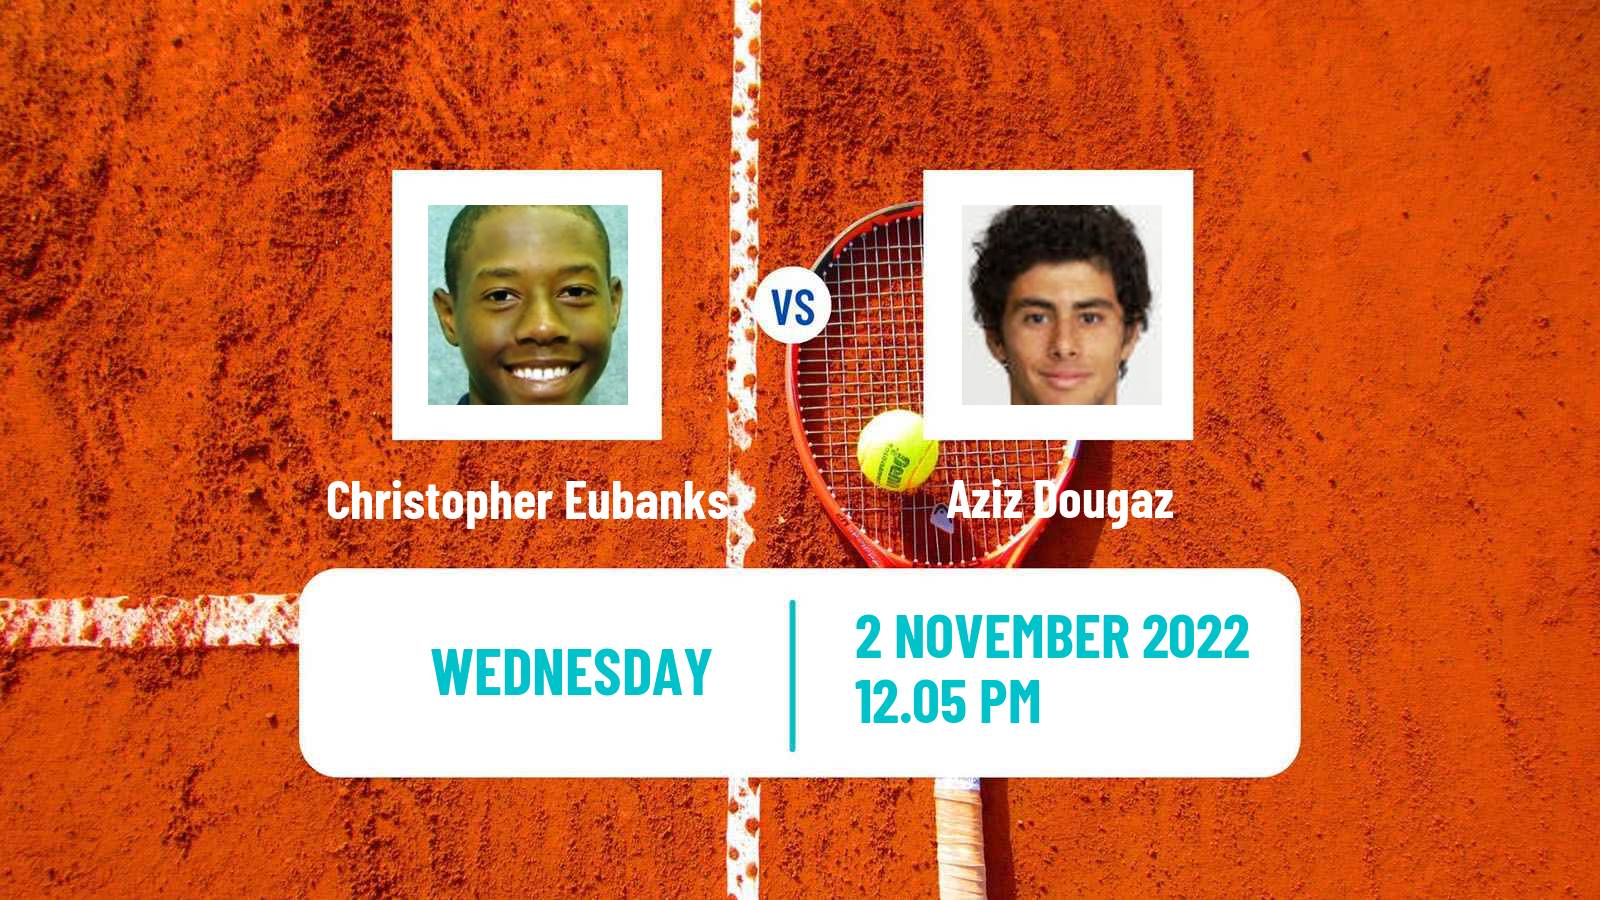 Tennis ATP Challenger Christopher Eubanks - Aziz Dougaz